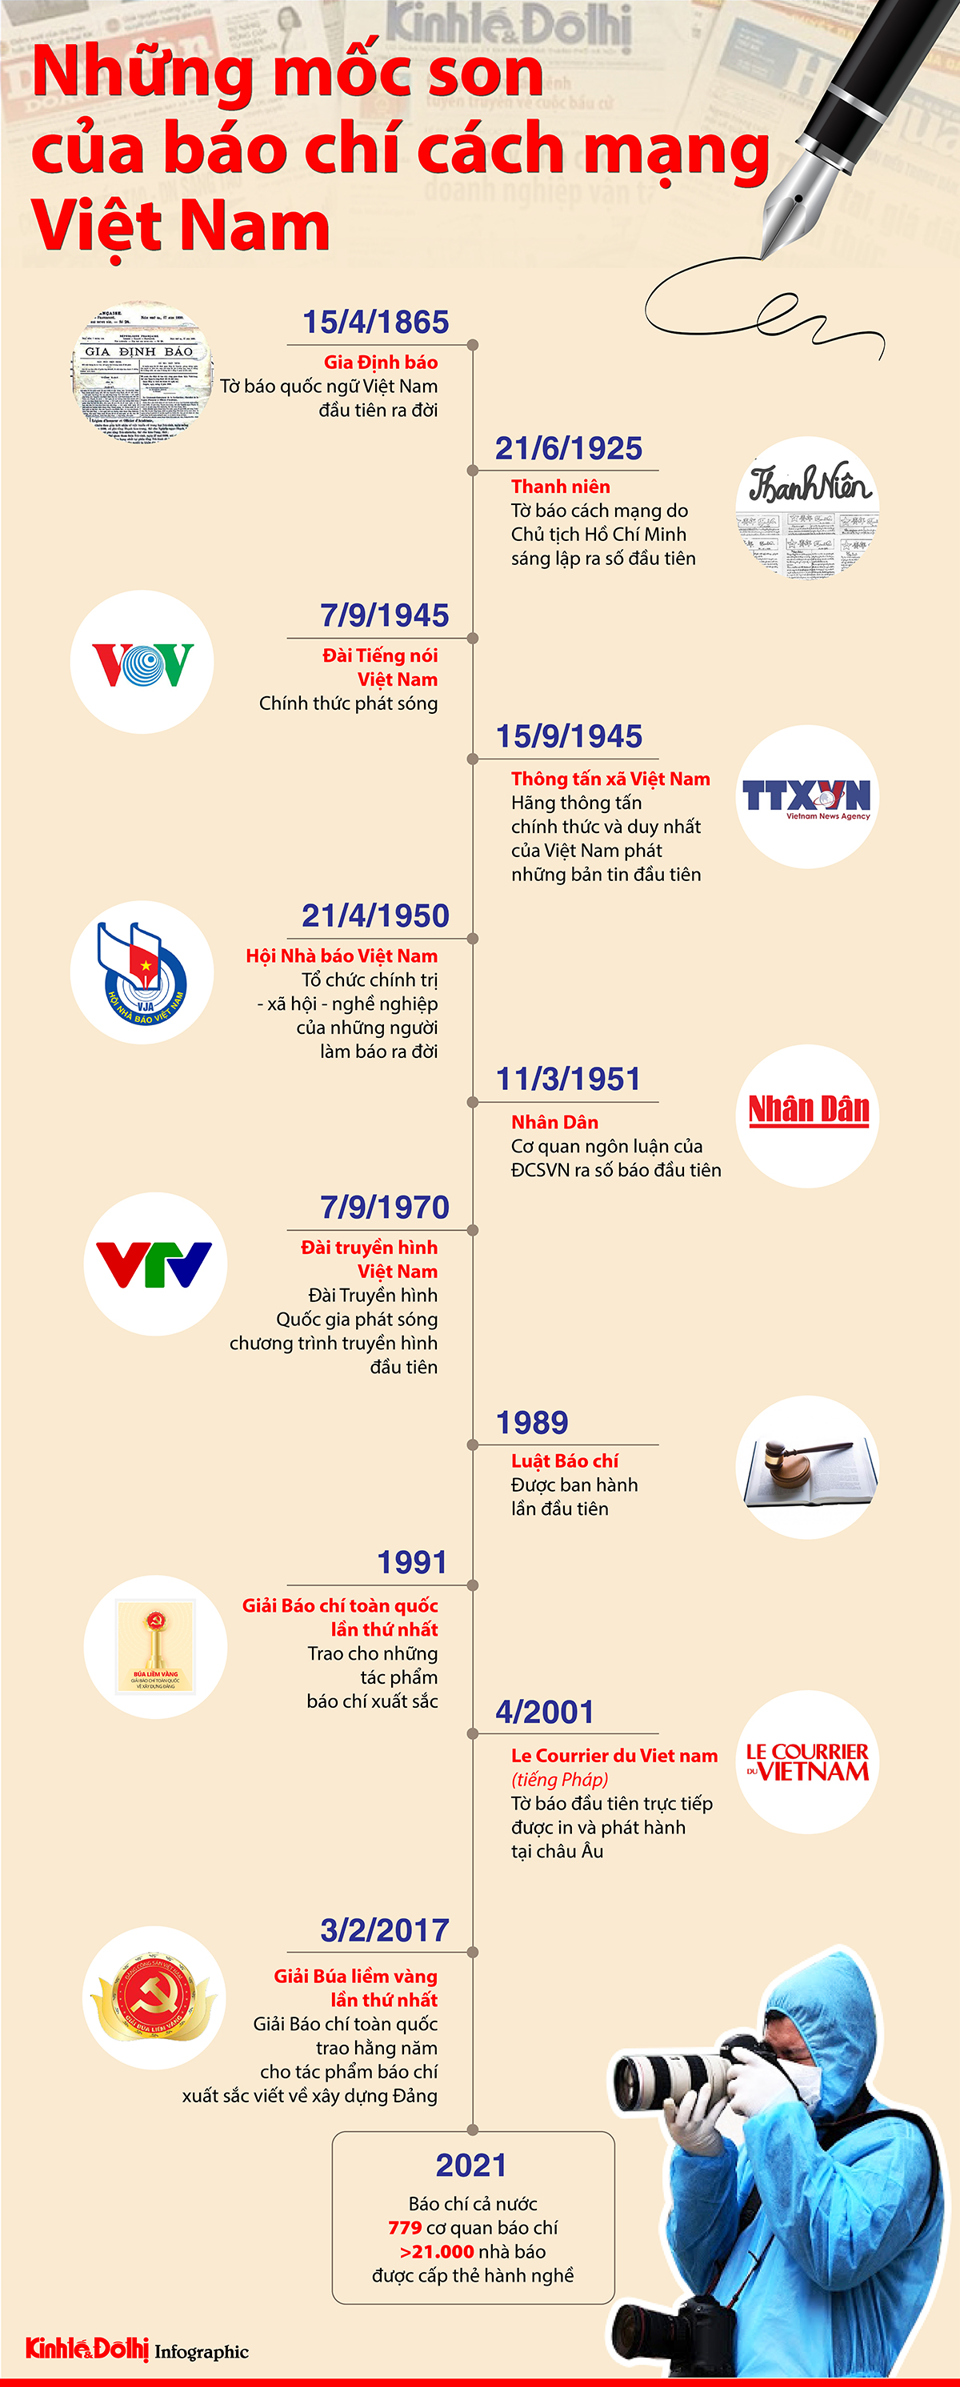 [Infographic] Những mốc son của báo chí cách mạng Việt Nam - Ảnh 1